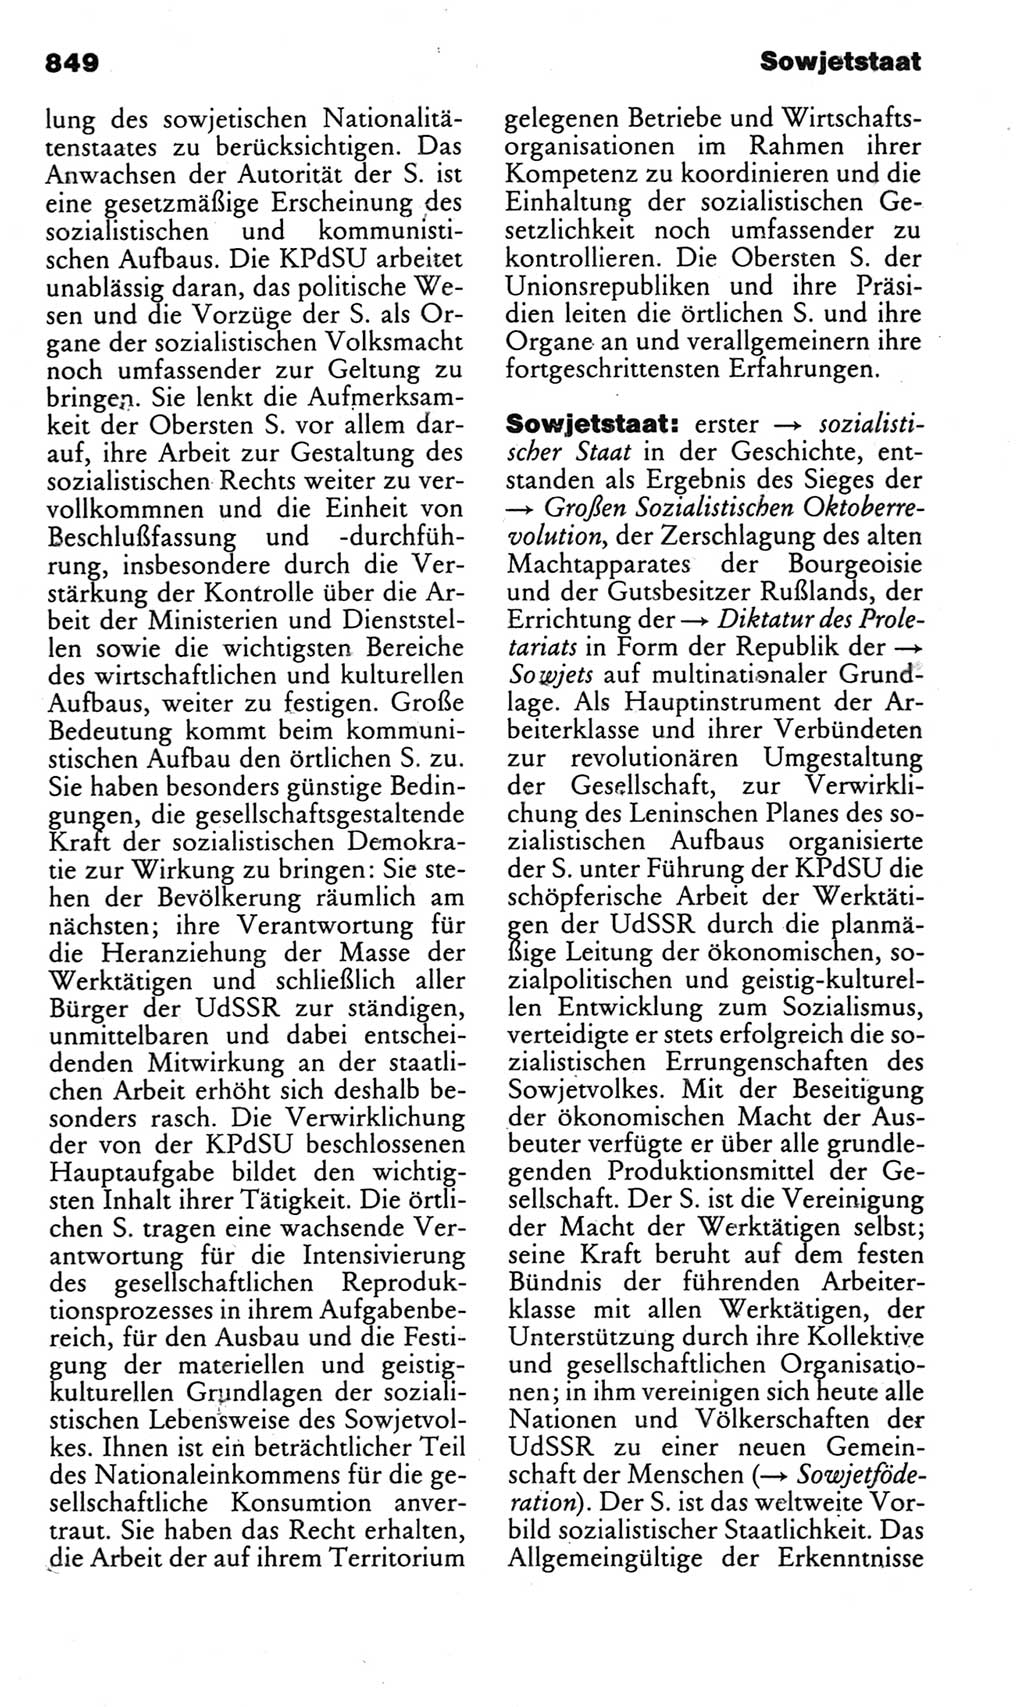 Kleines politisches Wörterbuch [Deutsche Demokratische Republik (DDR)] 1983, Seite 849 (Kl. pol. Wb. DDR 1983, S. 849)